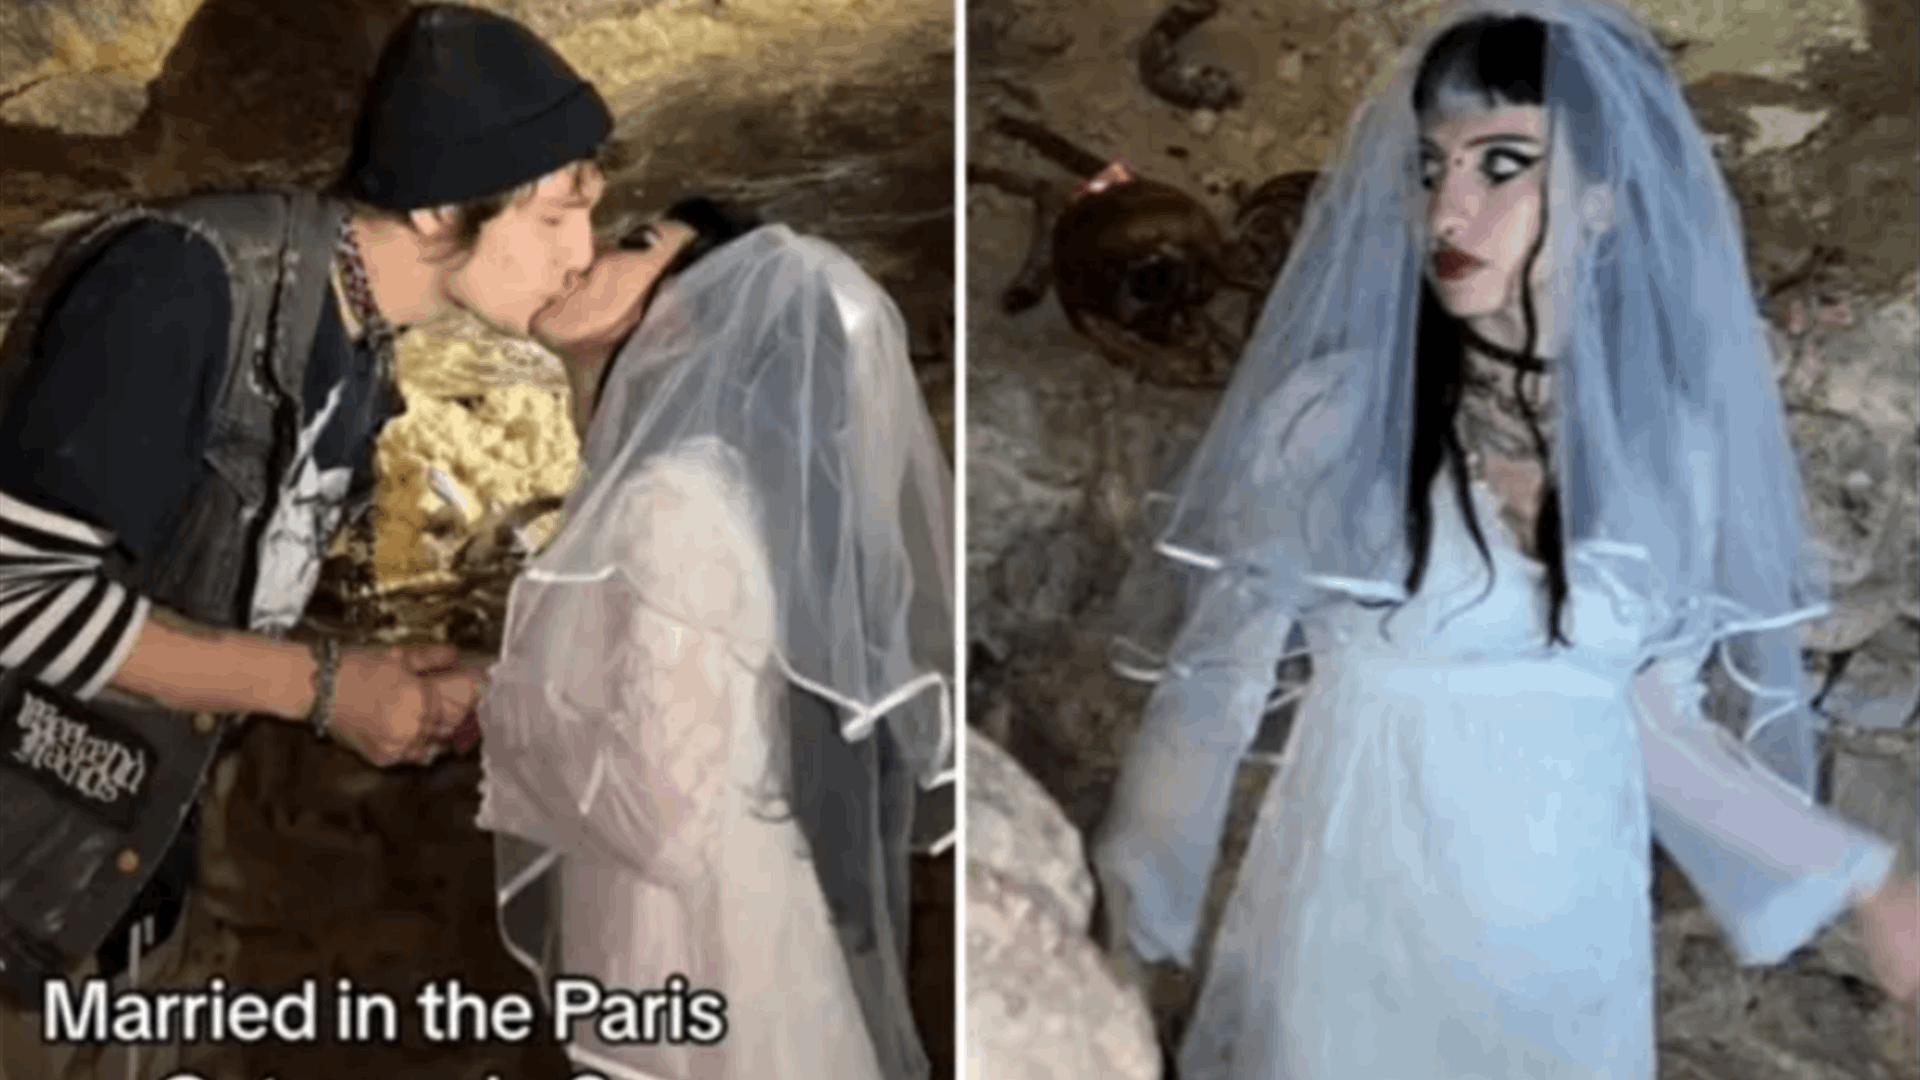 حفل زفاف غريب وغير مألوف...شريكان تزوجا في مقبرة قديمة وهذا ما كان يوجد بداخلها! (صور)